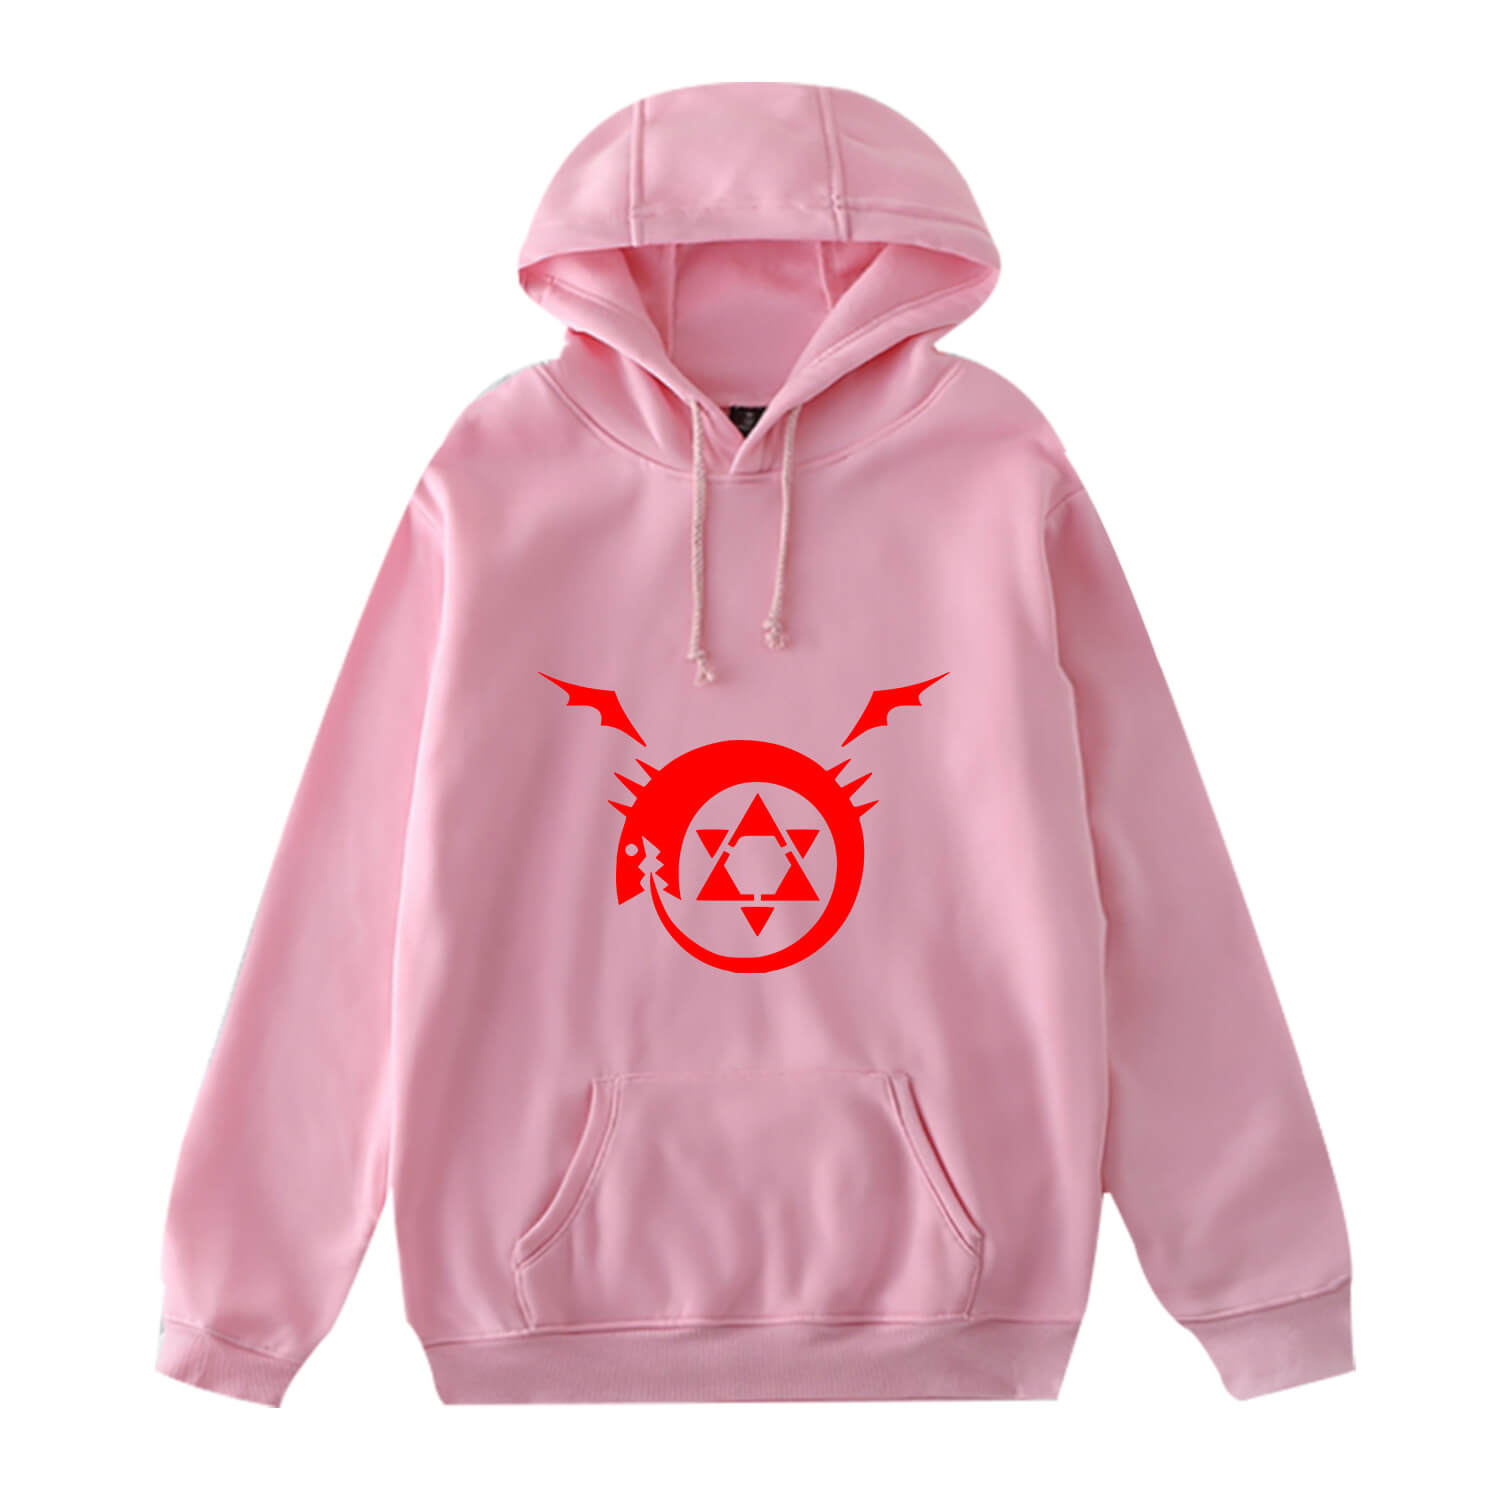 Fullmetal Alchemist long sleeves hoodie 3 colors